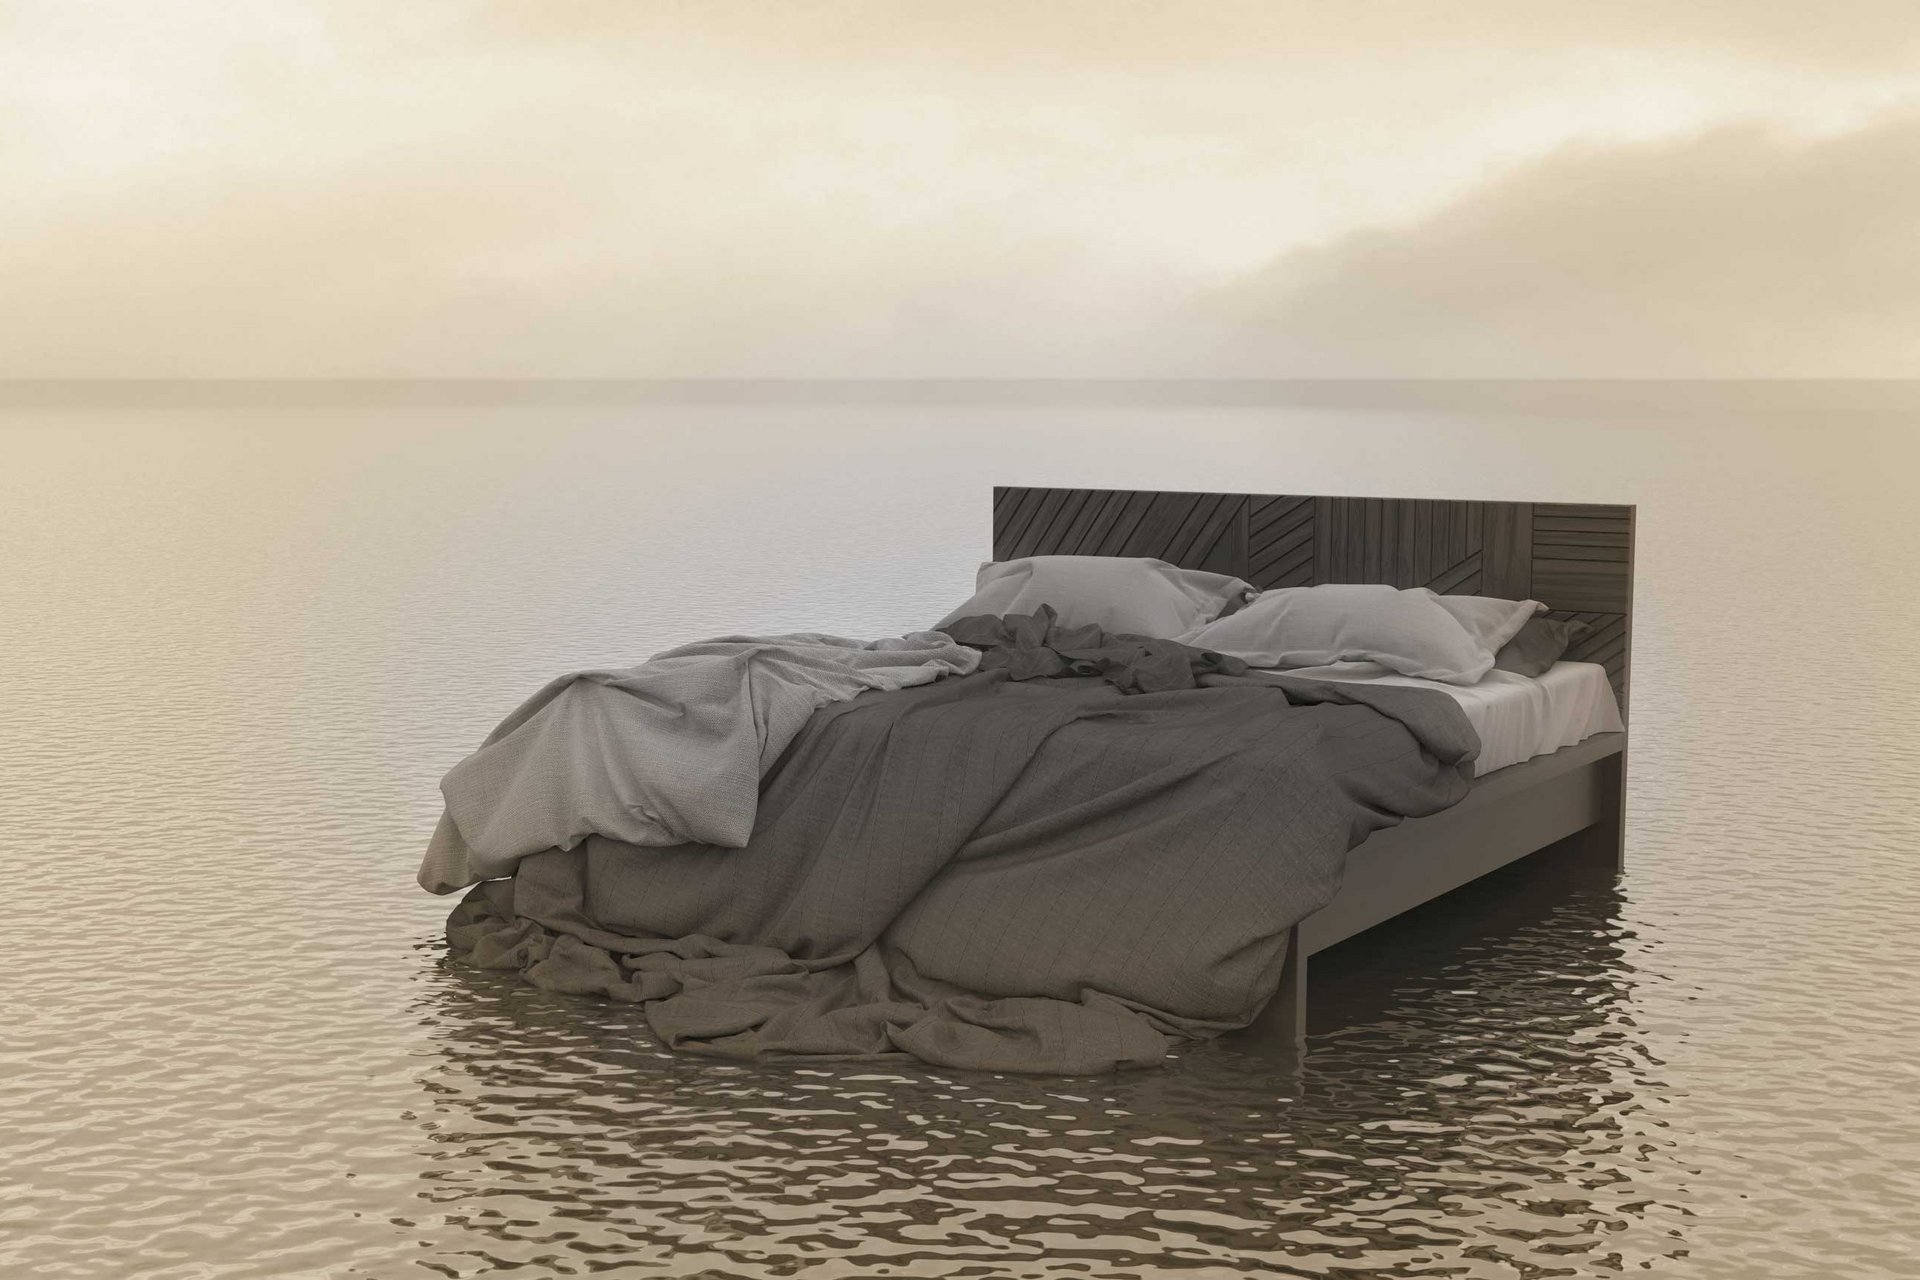 Bild eines Betts, das in rundum Wasser steht, um das chronische Erschöpfungssyndrom zu versinnbildlichen